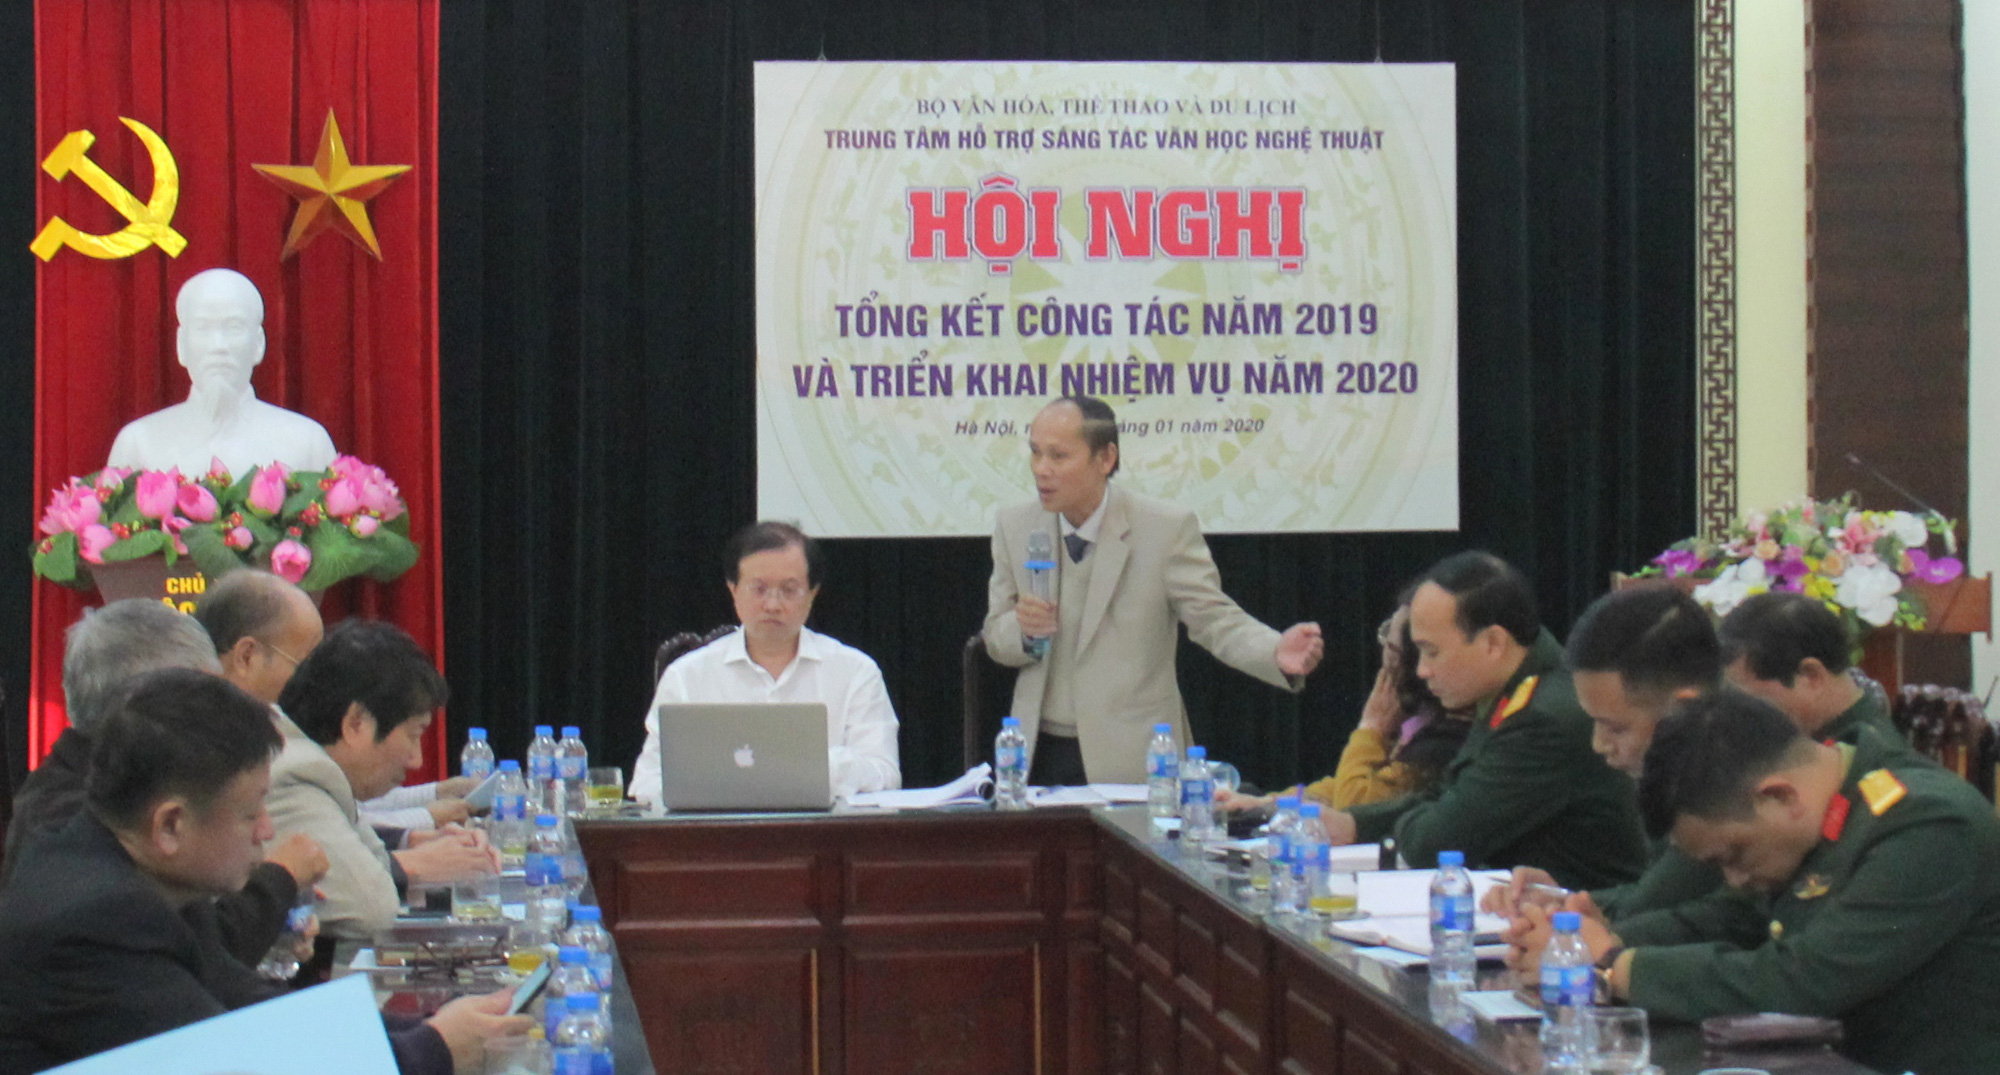 Thứ trưởng Tạ Quang Đông: Nâng cao chất lượng các trại sáng tác văn học nghệ thuật, góp phần làm giàu bản sắc văn hóa Việt Nam - Ảnh 2.